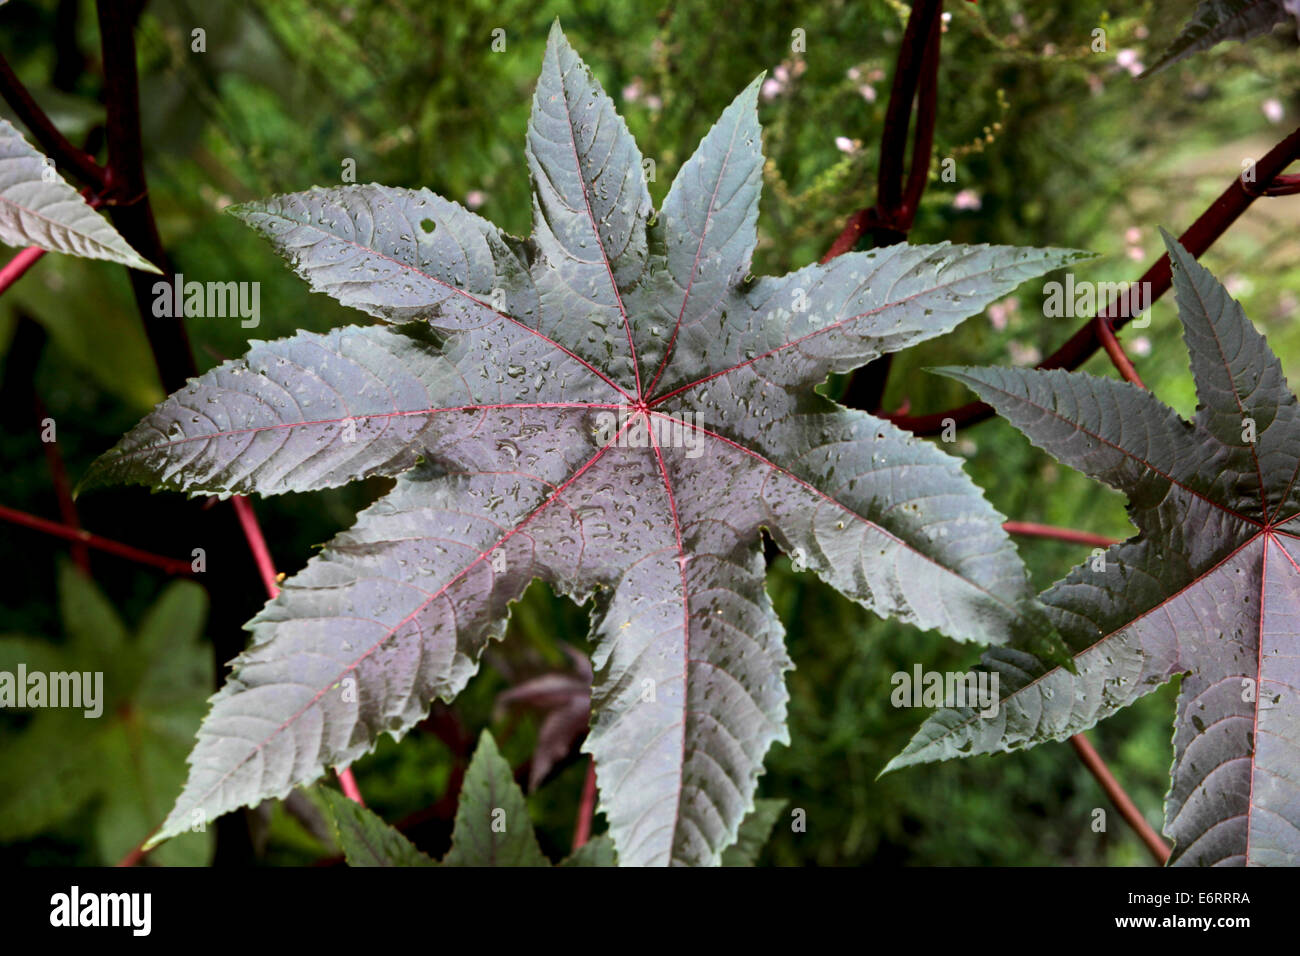 Castor oil plant, Ricinus communis, leaves, poisonous plant Stock Photo